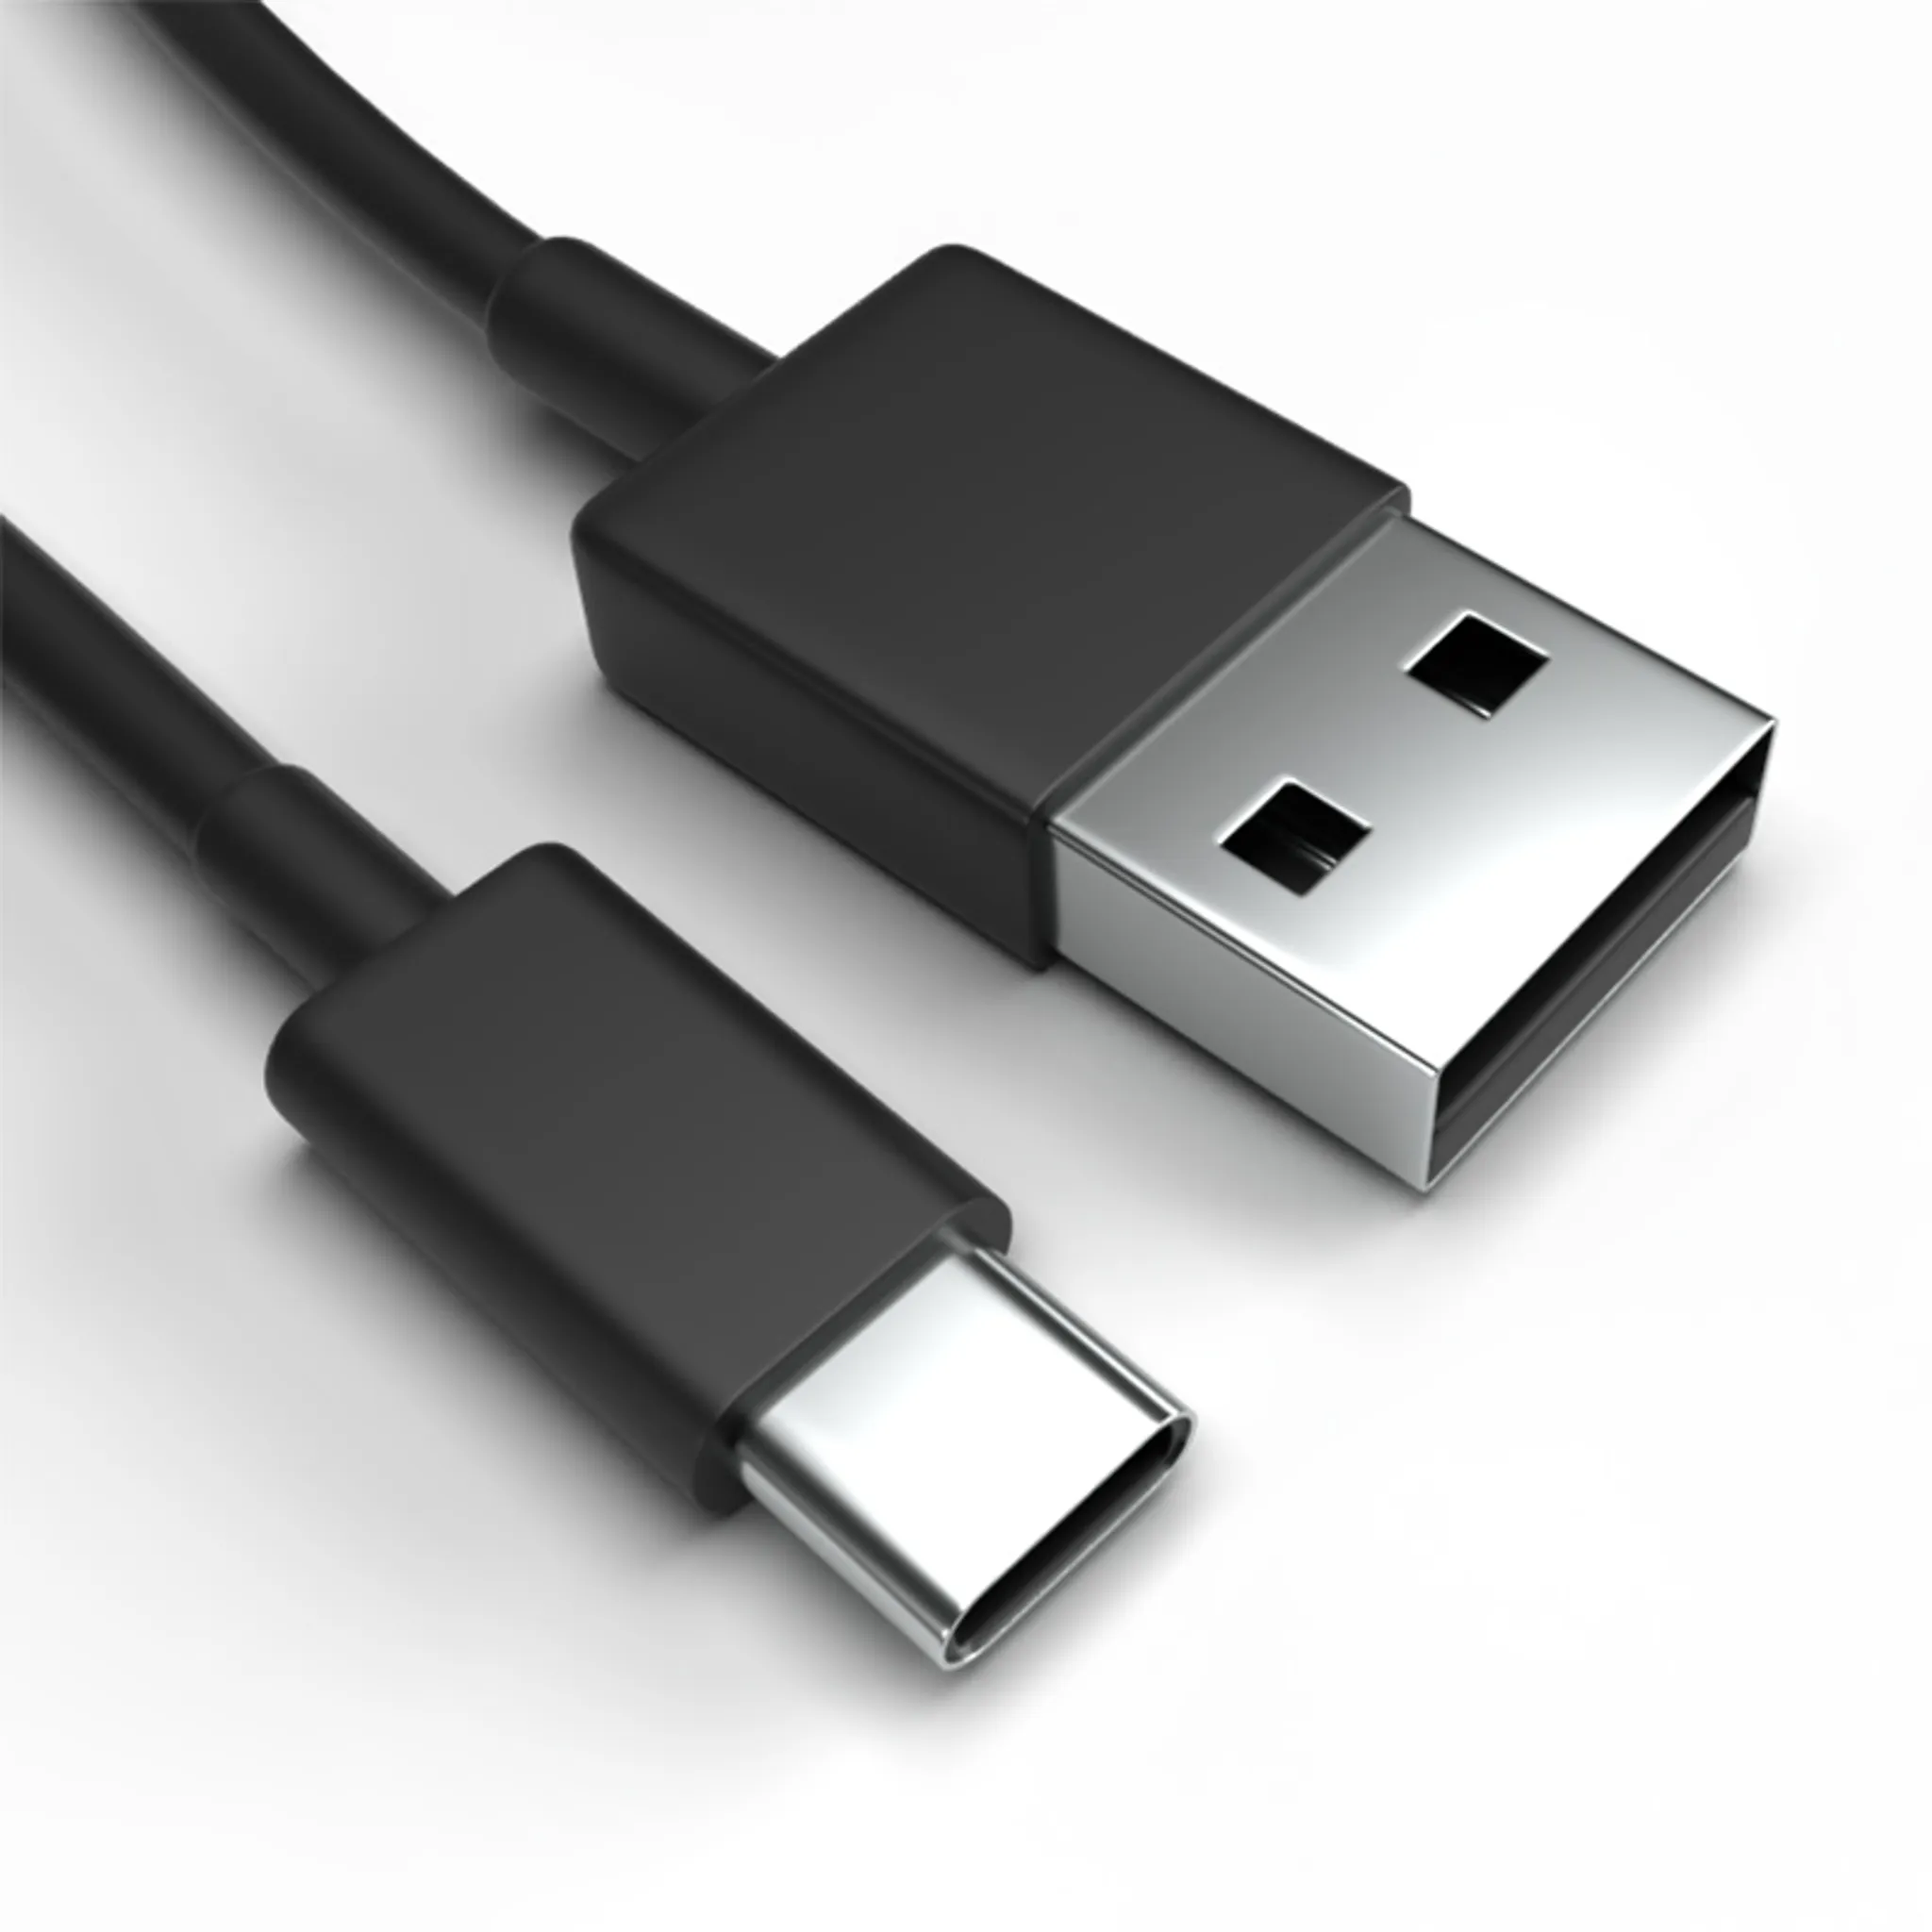 Kfz-USB-Ladekabel für Handy & Co. I